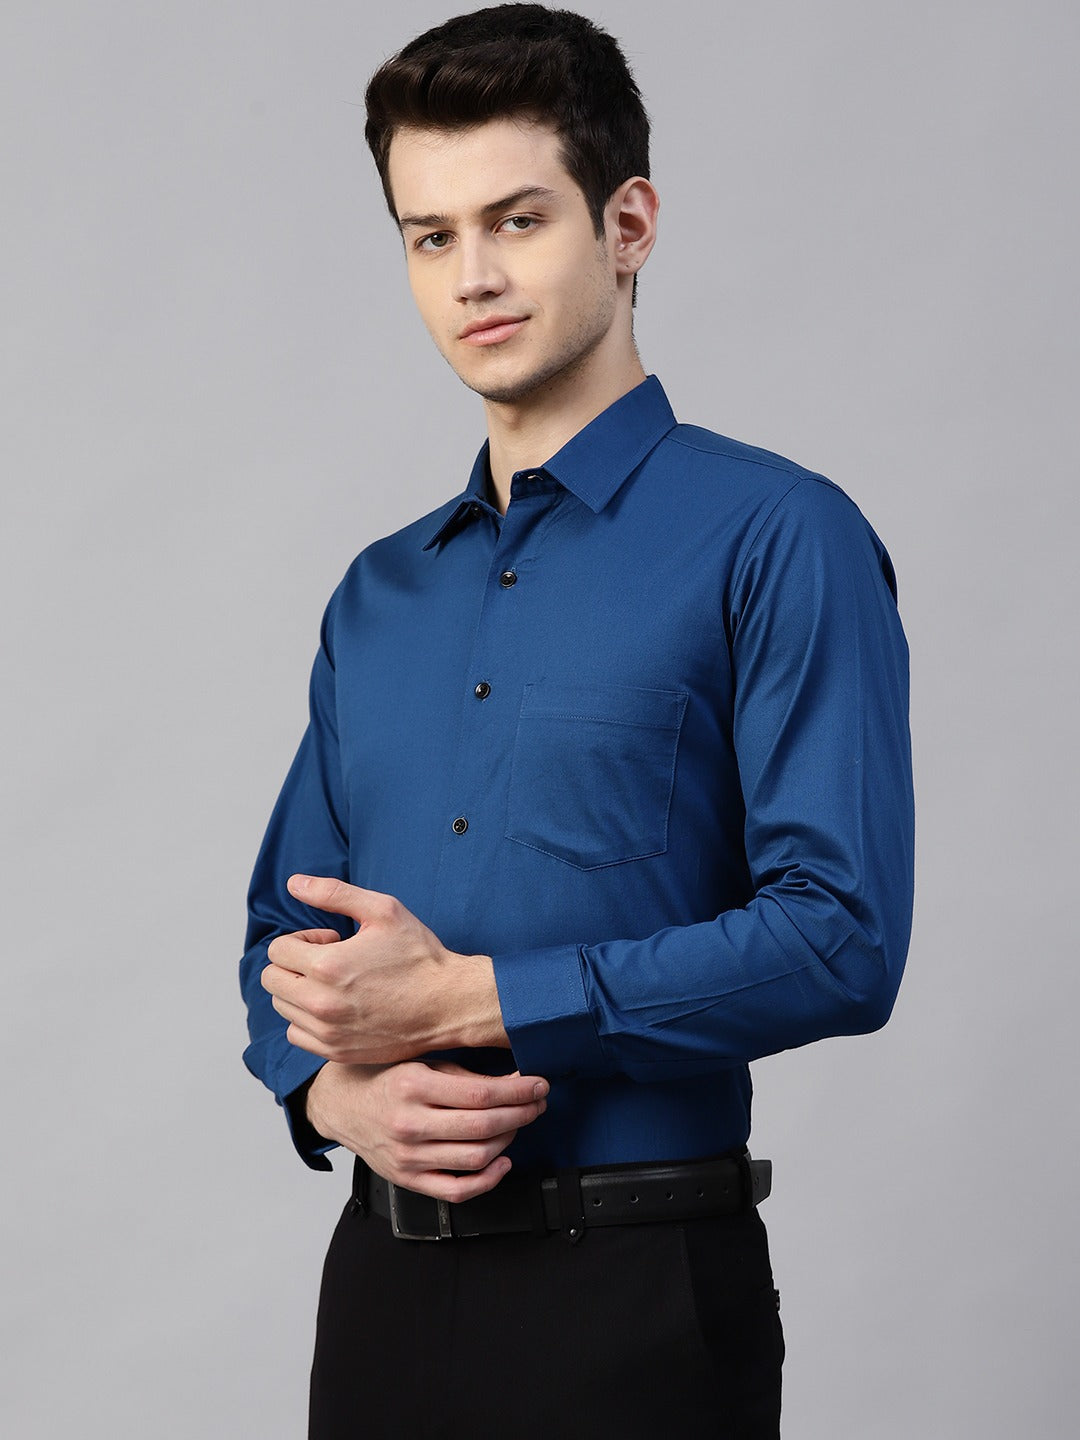 Men Teal Blue Smart Slim Fit Solid Twill Weave Formal Shirt